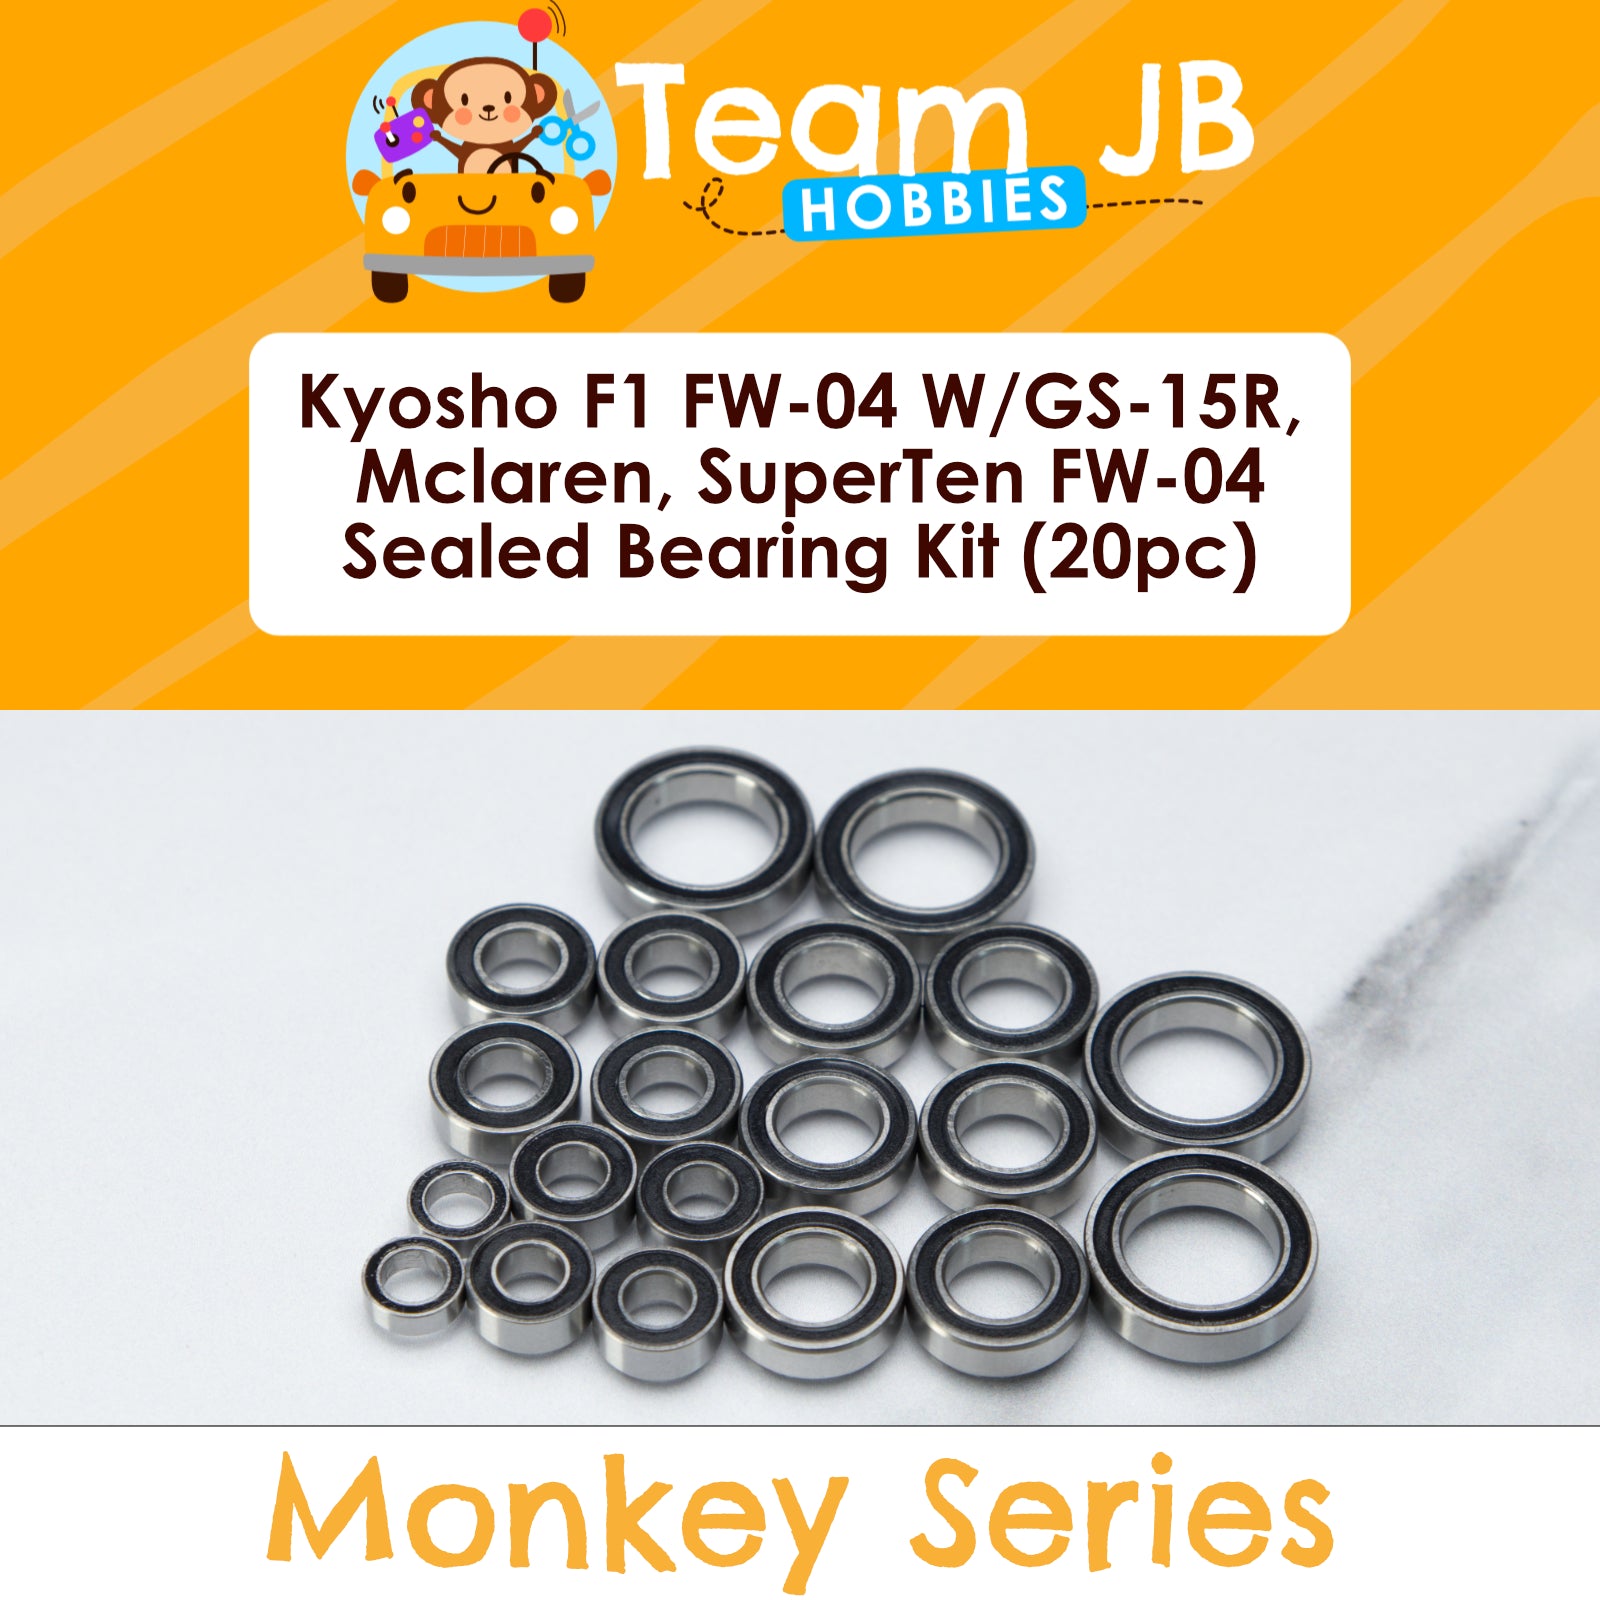 Kyosho F1 FW-04 W/GS-15R, Mclaren, SuperTen FW-04 - Sealed Bearing Kit